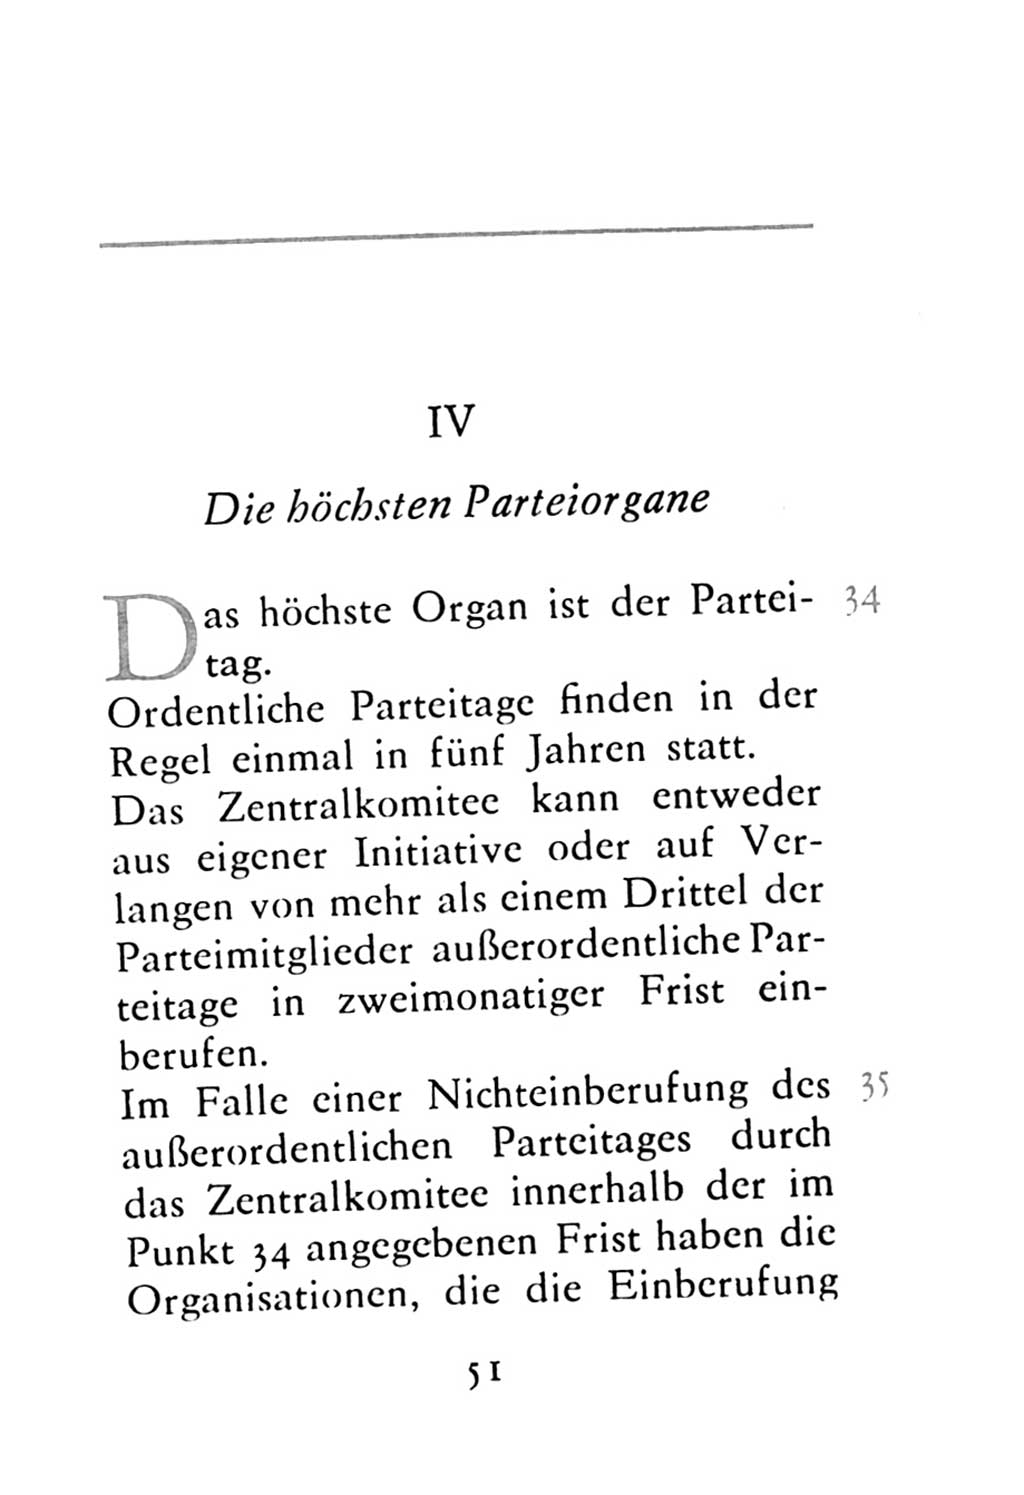 Statut der Sozialistischen Einheitspartei Deutschlands (SED) 1976, Seite 51 (St. SED DDR 1976, S. 51)